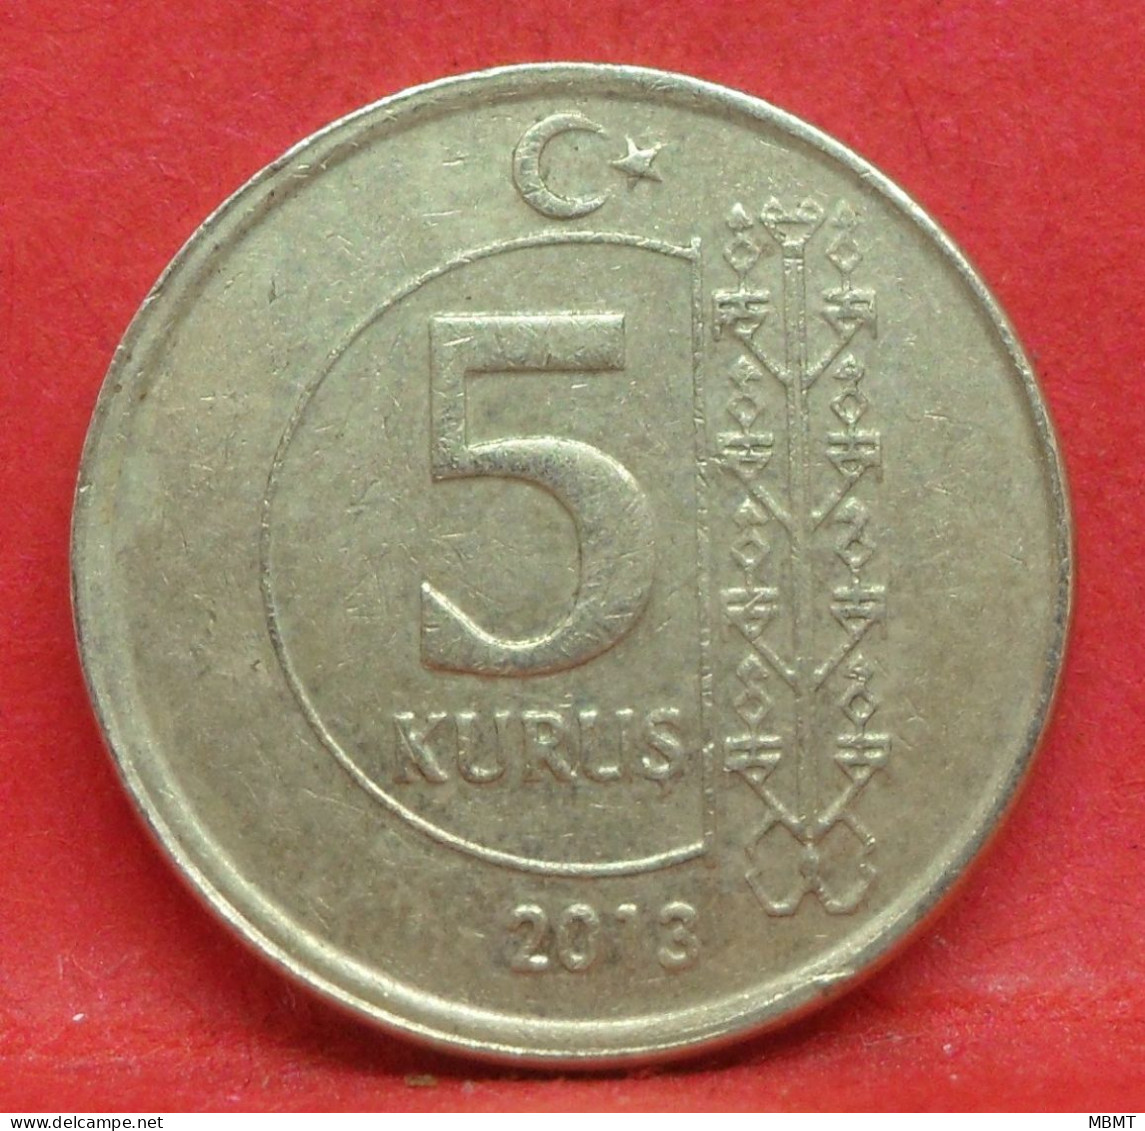 5 Kurus 2013 - TB - Pièce De Monnaie Turquie - Article N°4963 - Turquie